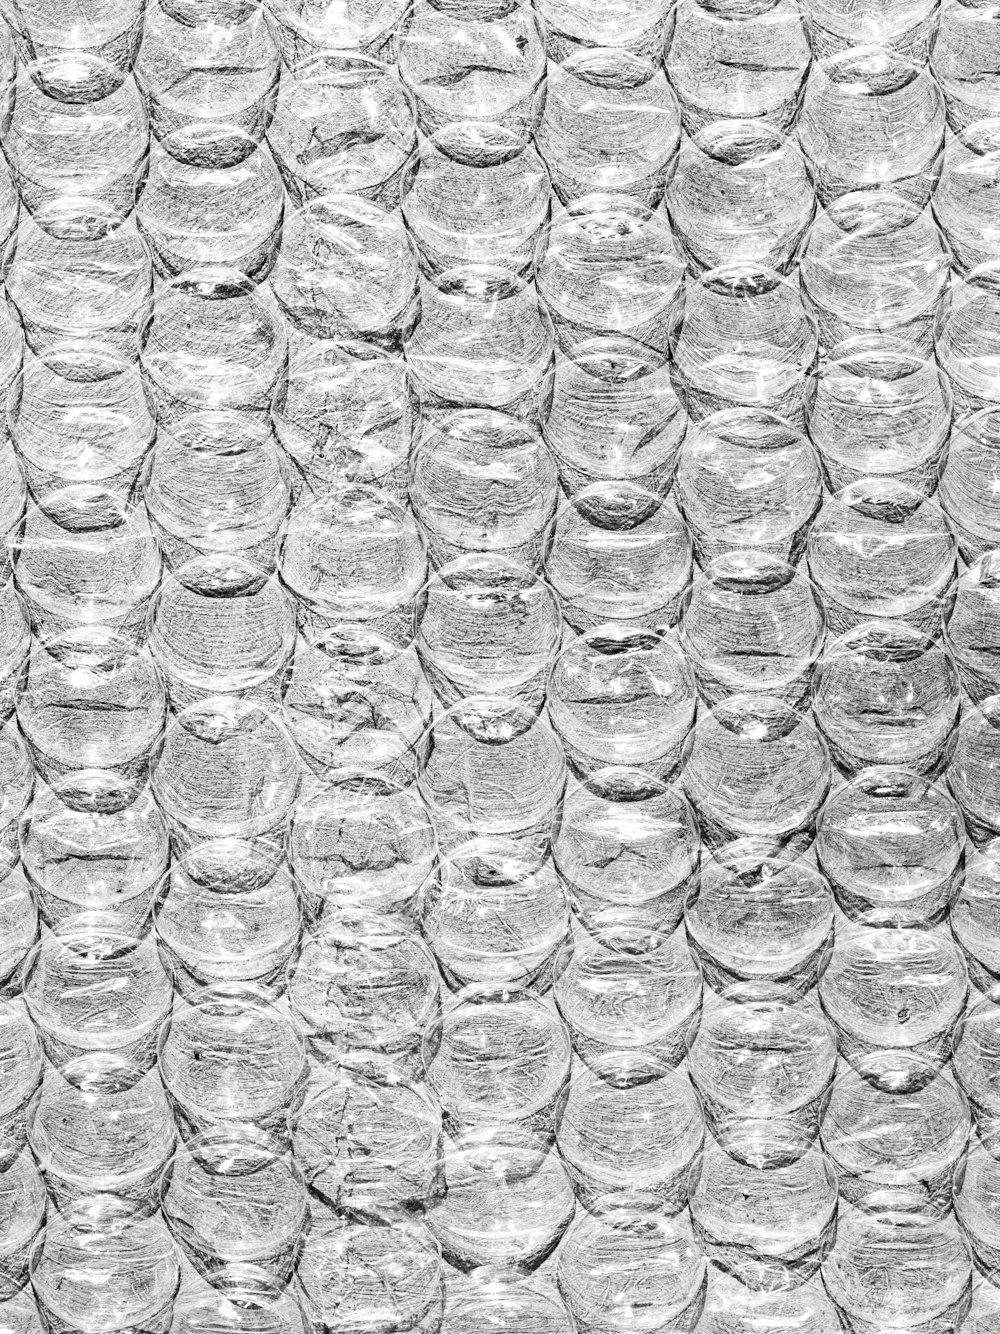 Foto en escala de grises de gotas de agua en vidrio